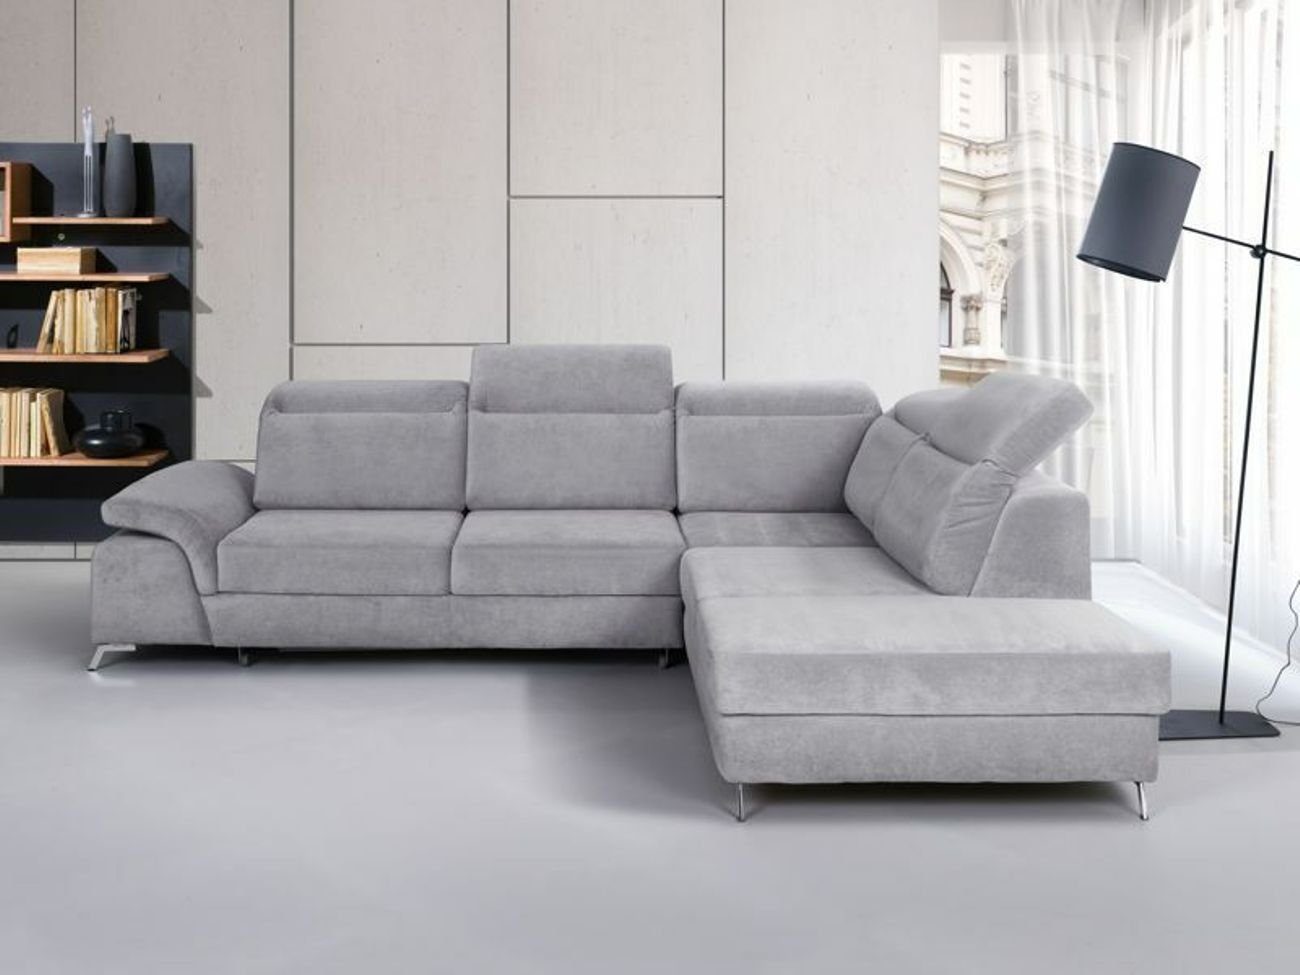 JVmoebel Ecksofa Design Couch Sofa Polster Schlafsofa Wohnzimmer Ecksofa Textl Stoff, Mit Bettfunktion Weiß